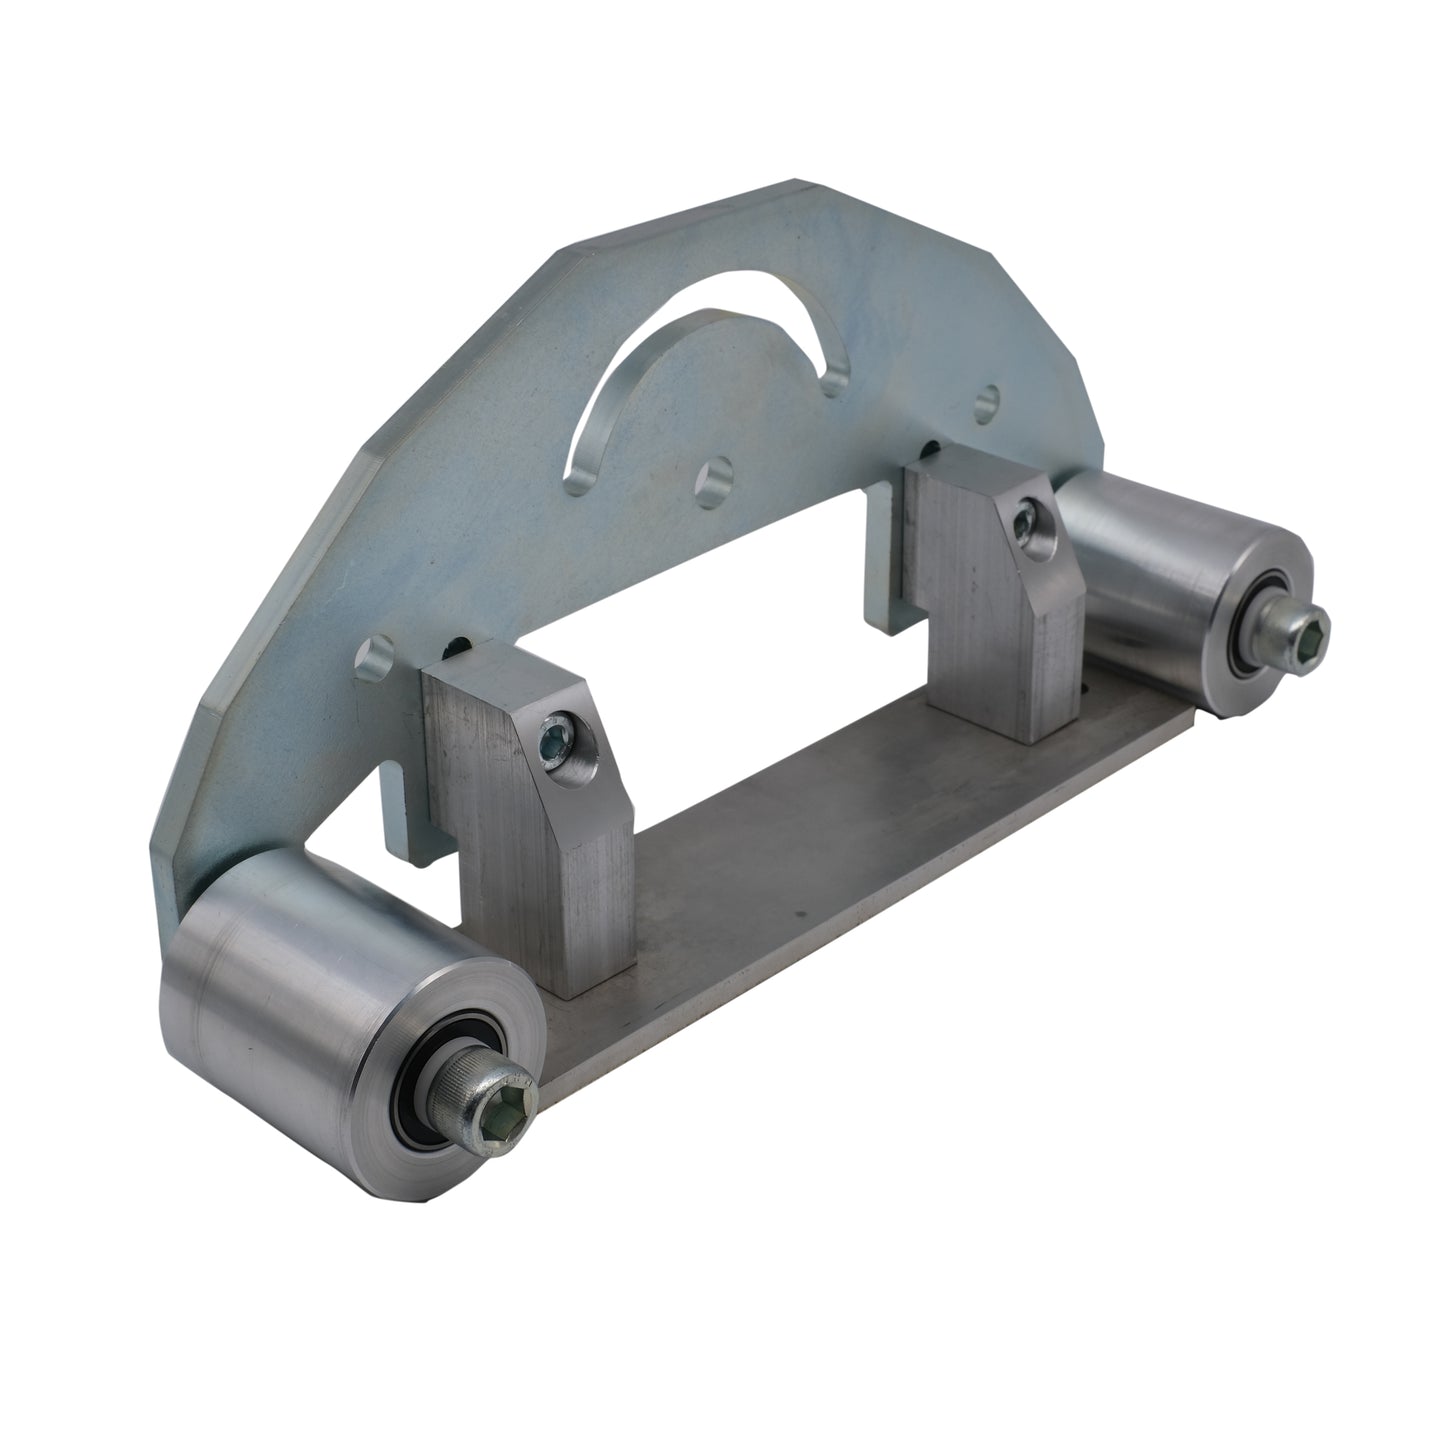 TR Maker Belt Grinder D-Backing plate for 2x72" 4"Drive 3" Tracking  Wheel  Kit